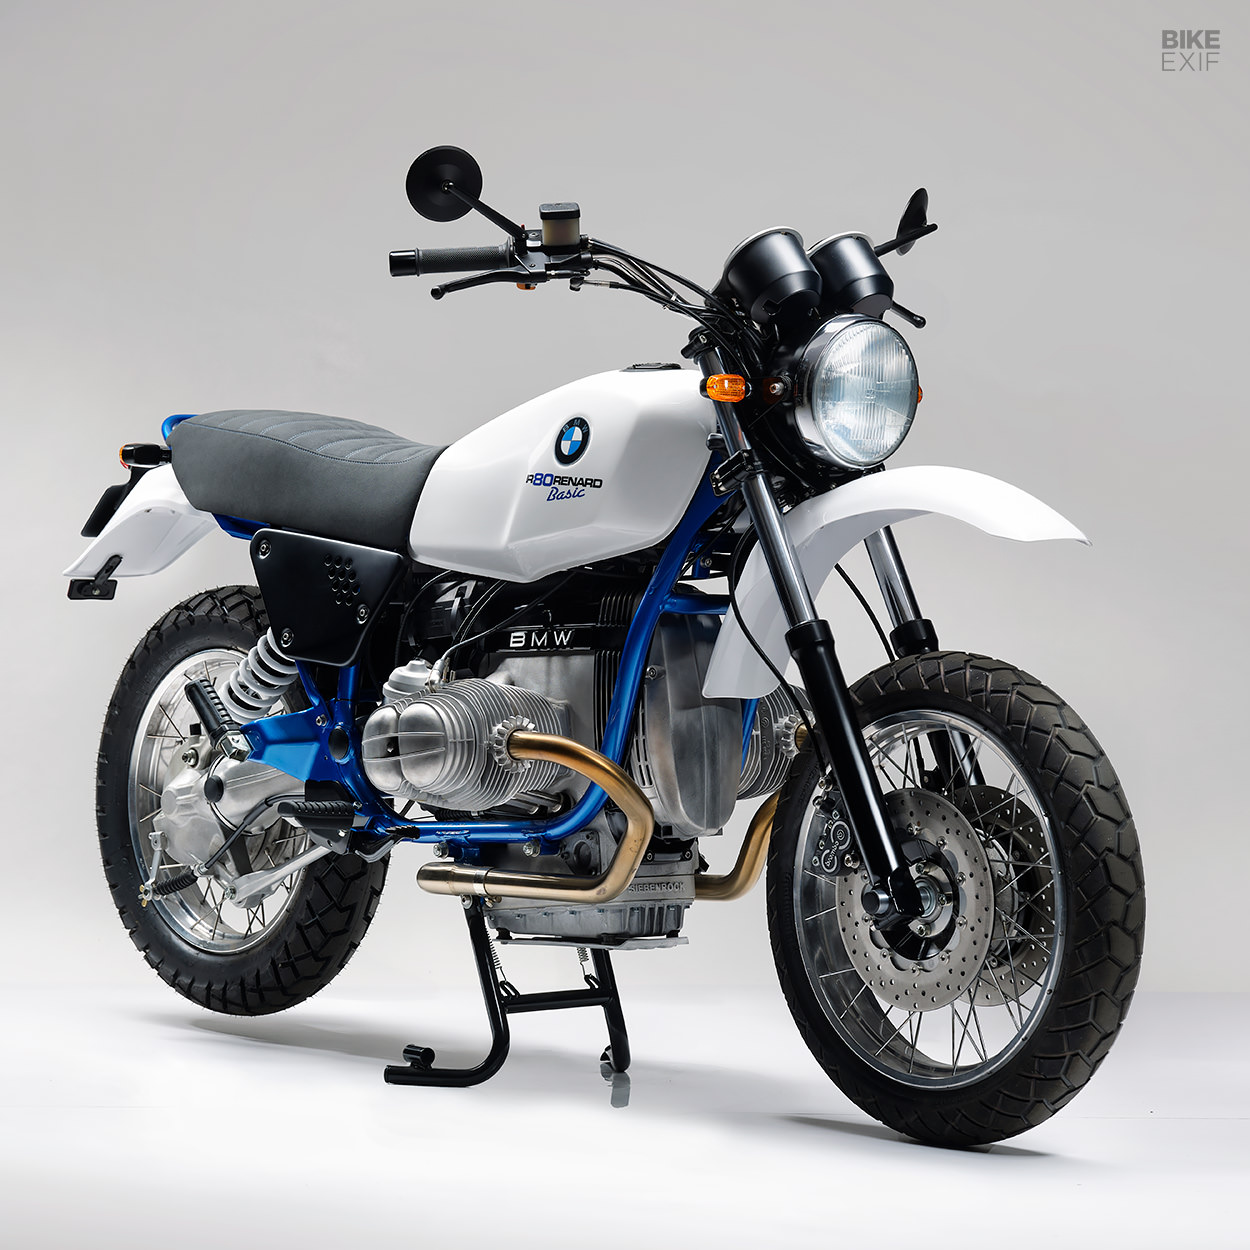 BMW R80 Basic restomod by Renard